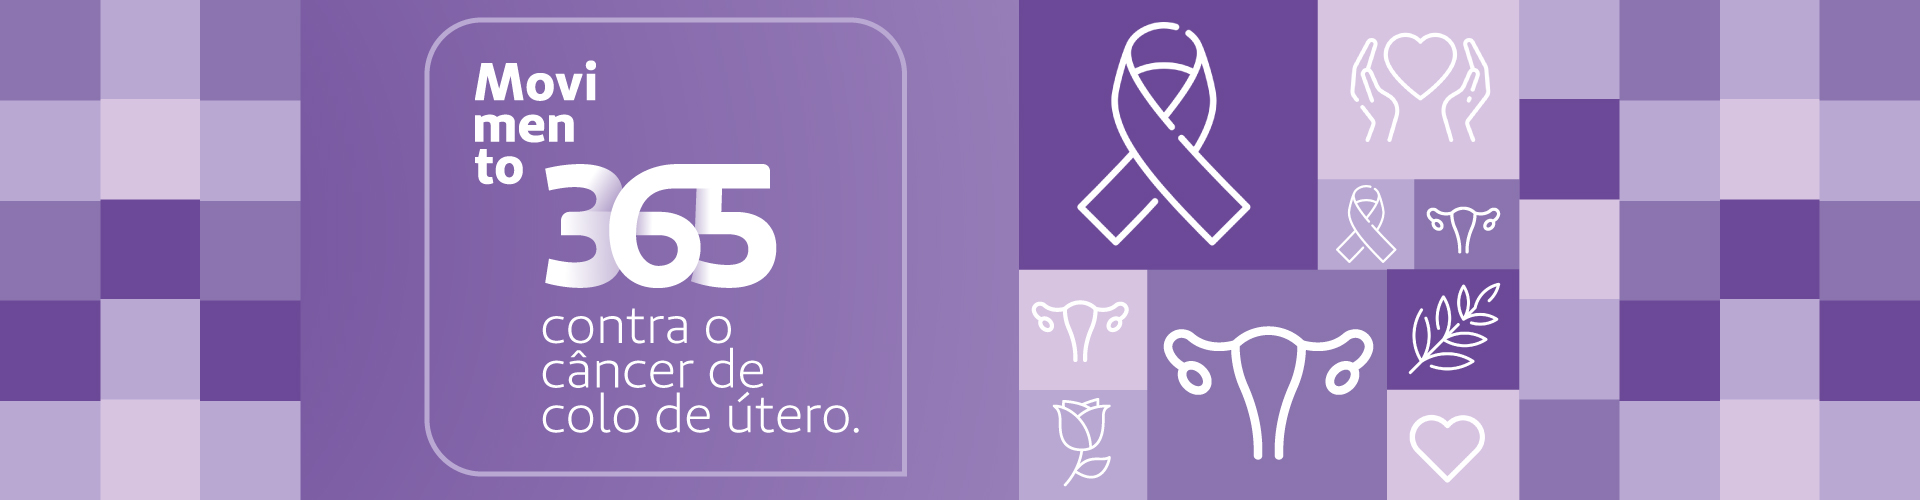 Movimento 365: autocuidado para prevenção do câncer de colo de útero